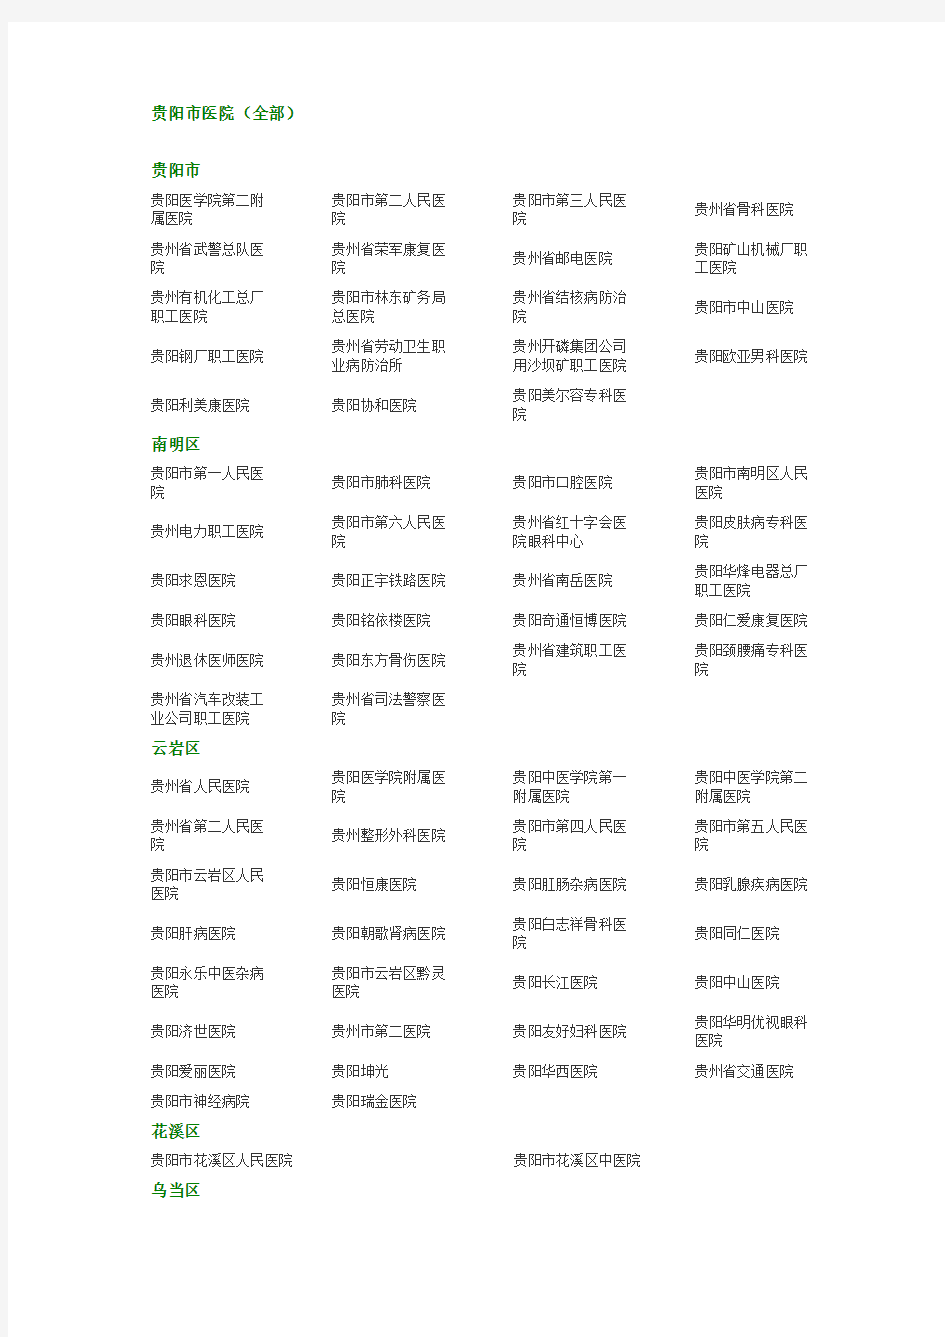 贵阳市医院名单(全部)